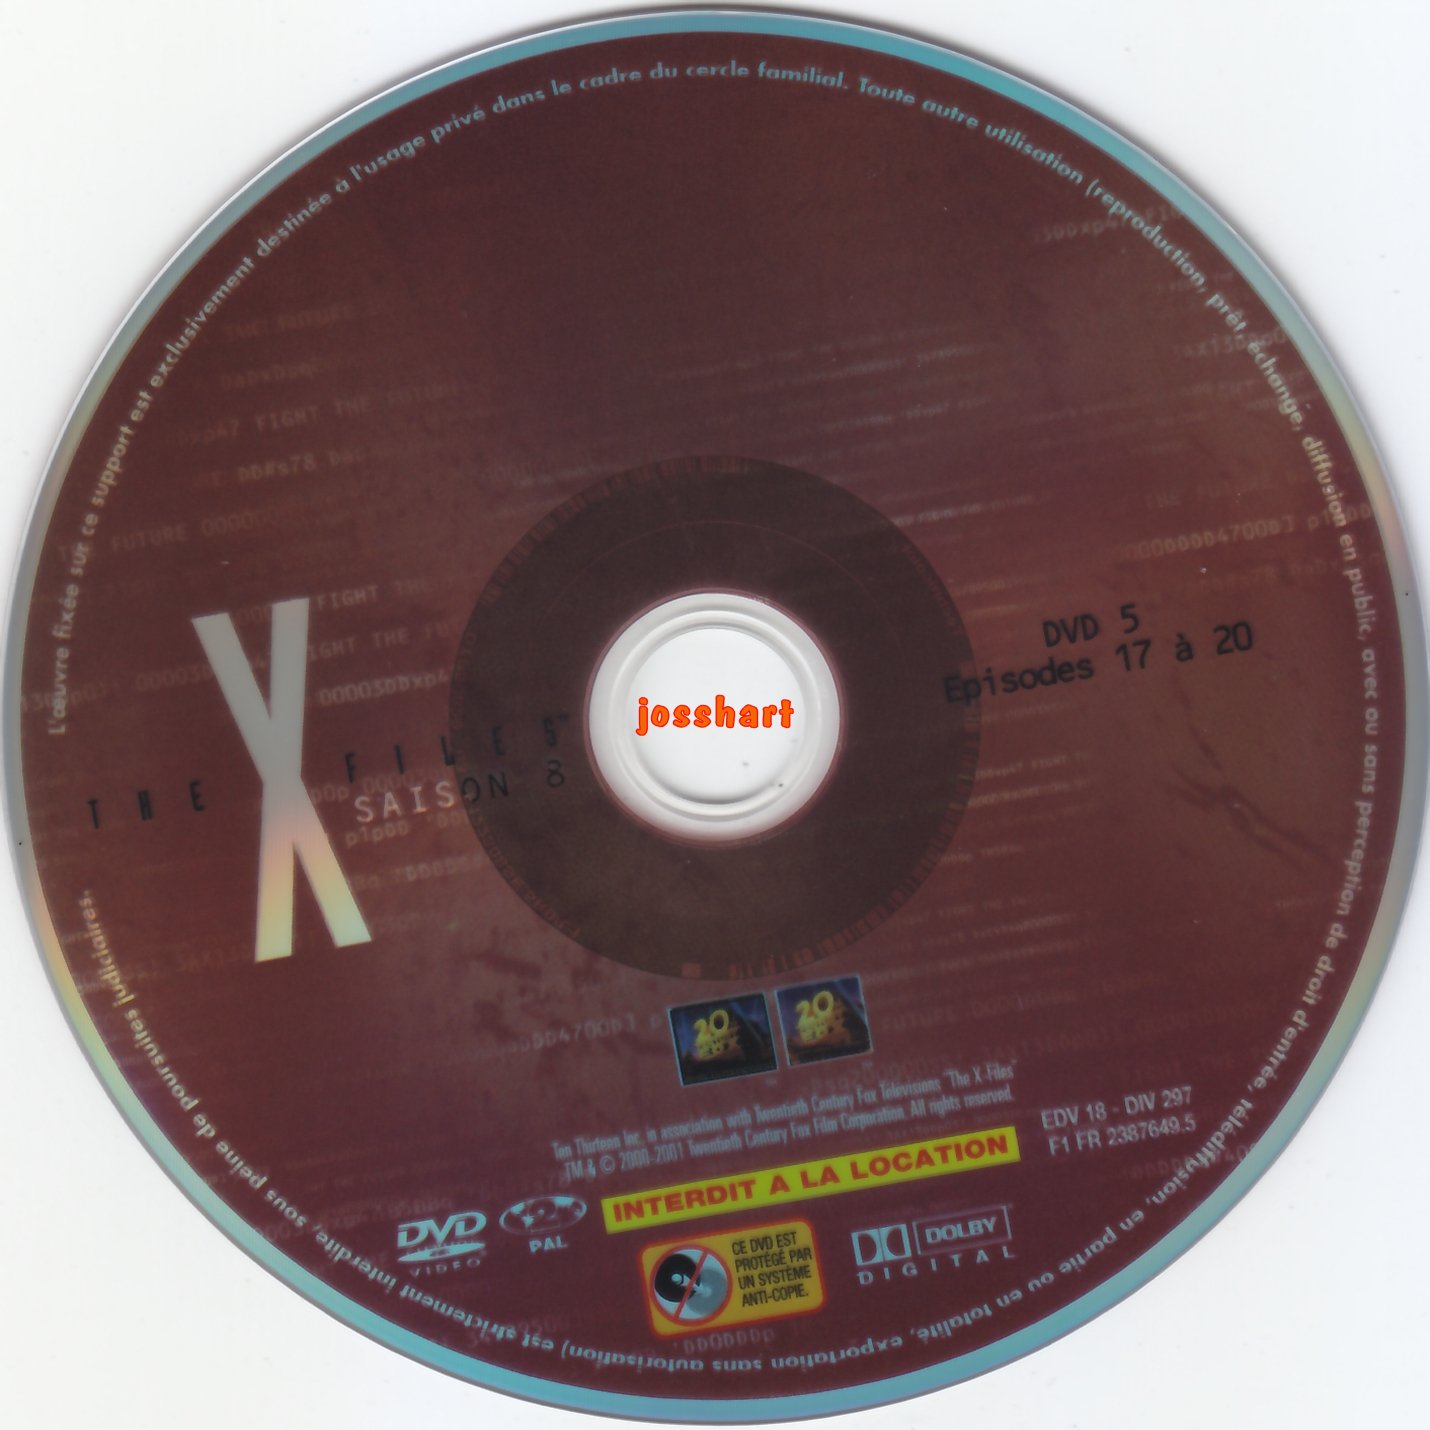 The X Files Saison 8 DVD 5 v2